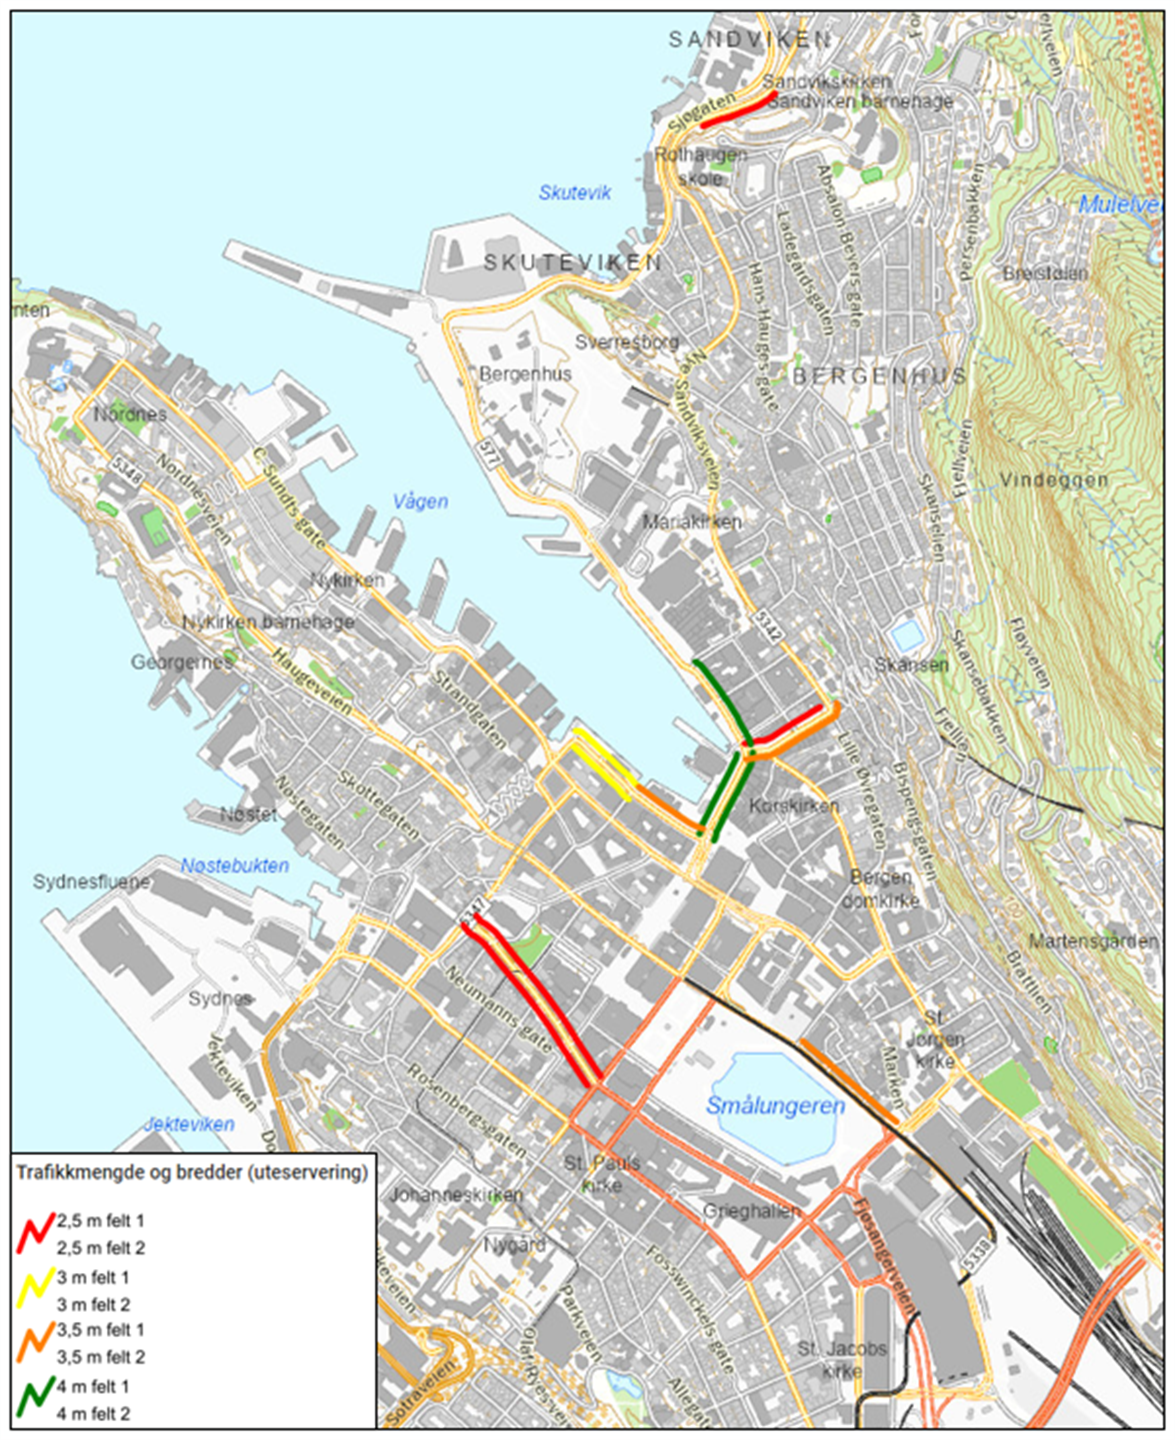 Kartet viser minimum fortausbredde basert på registreringer av fotgjengere i Bergen sentrum. 